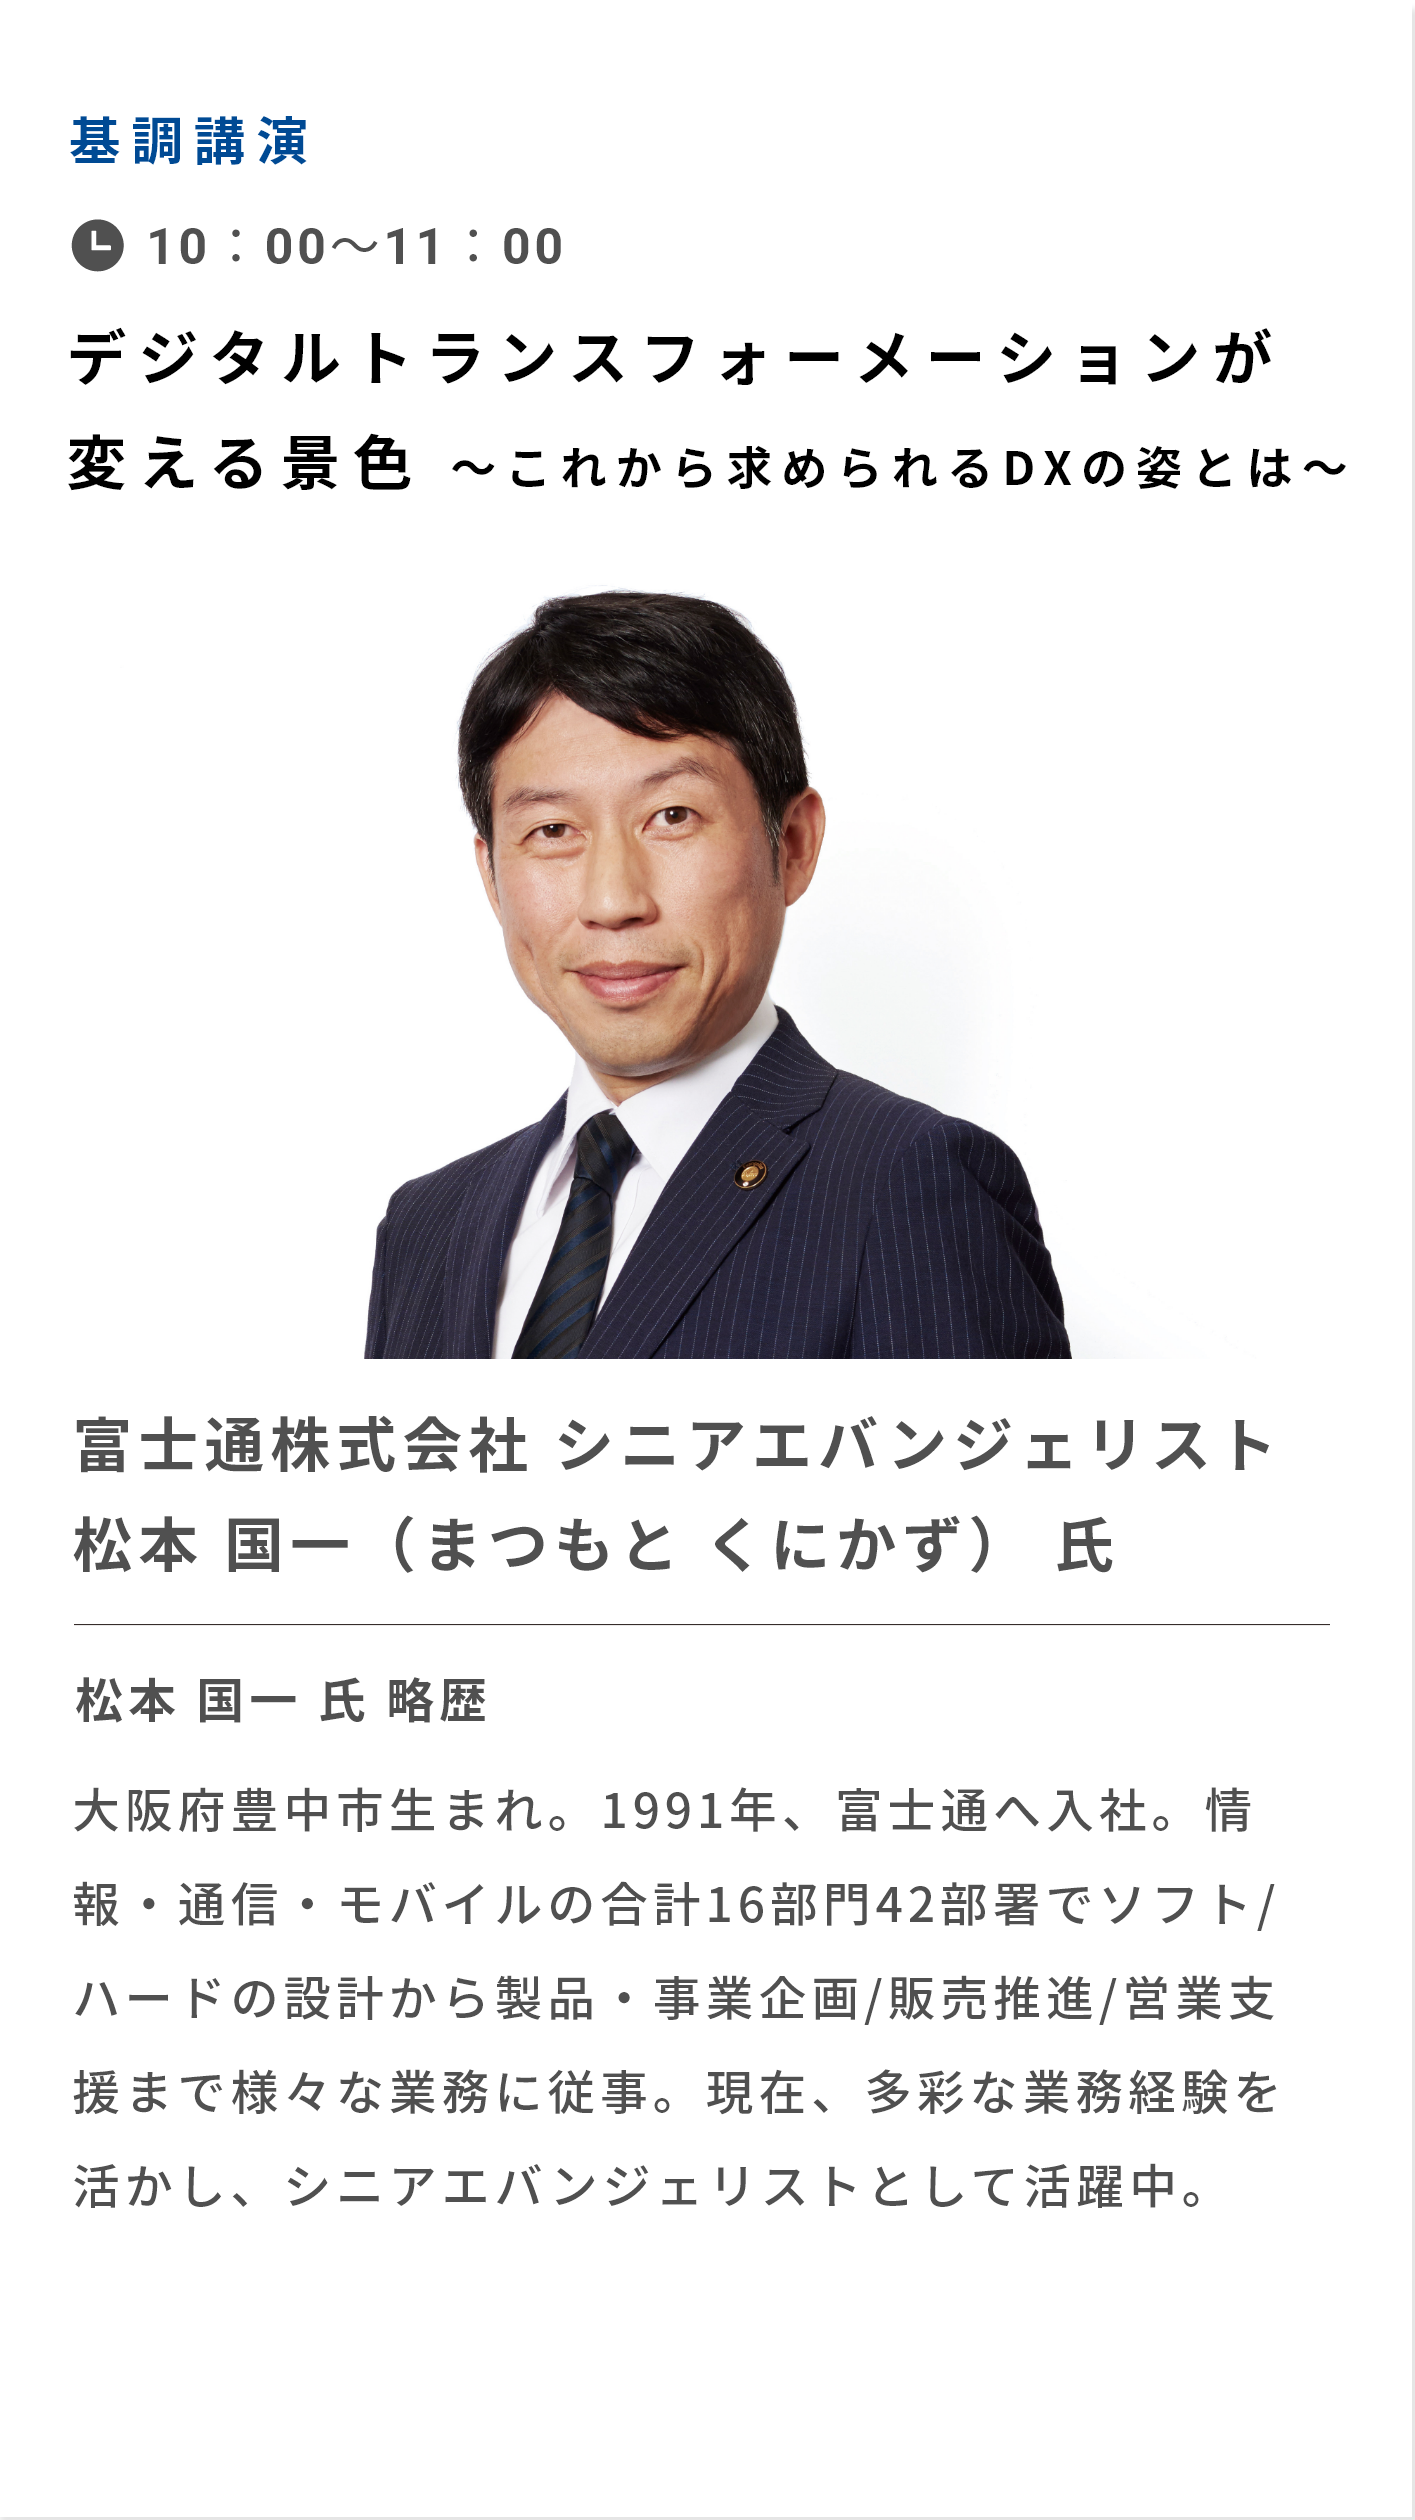 基調講演 日本のDX推進の第一人者が語る、デジタル活用の今後